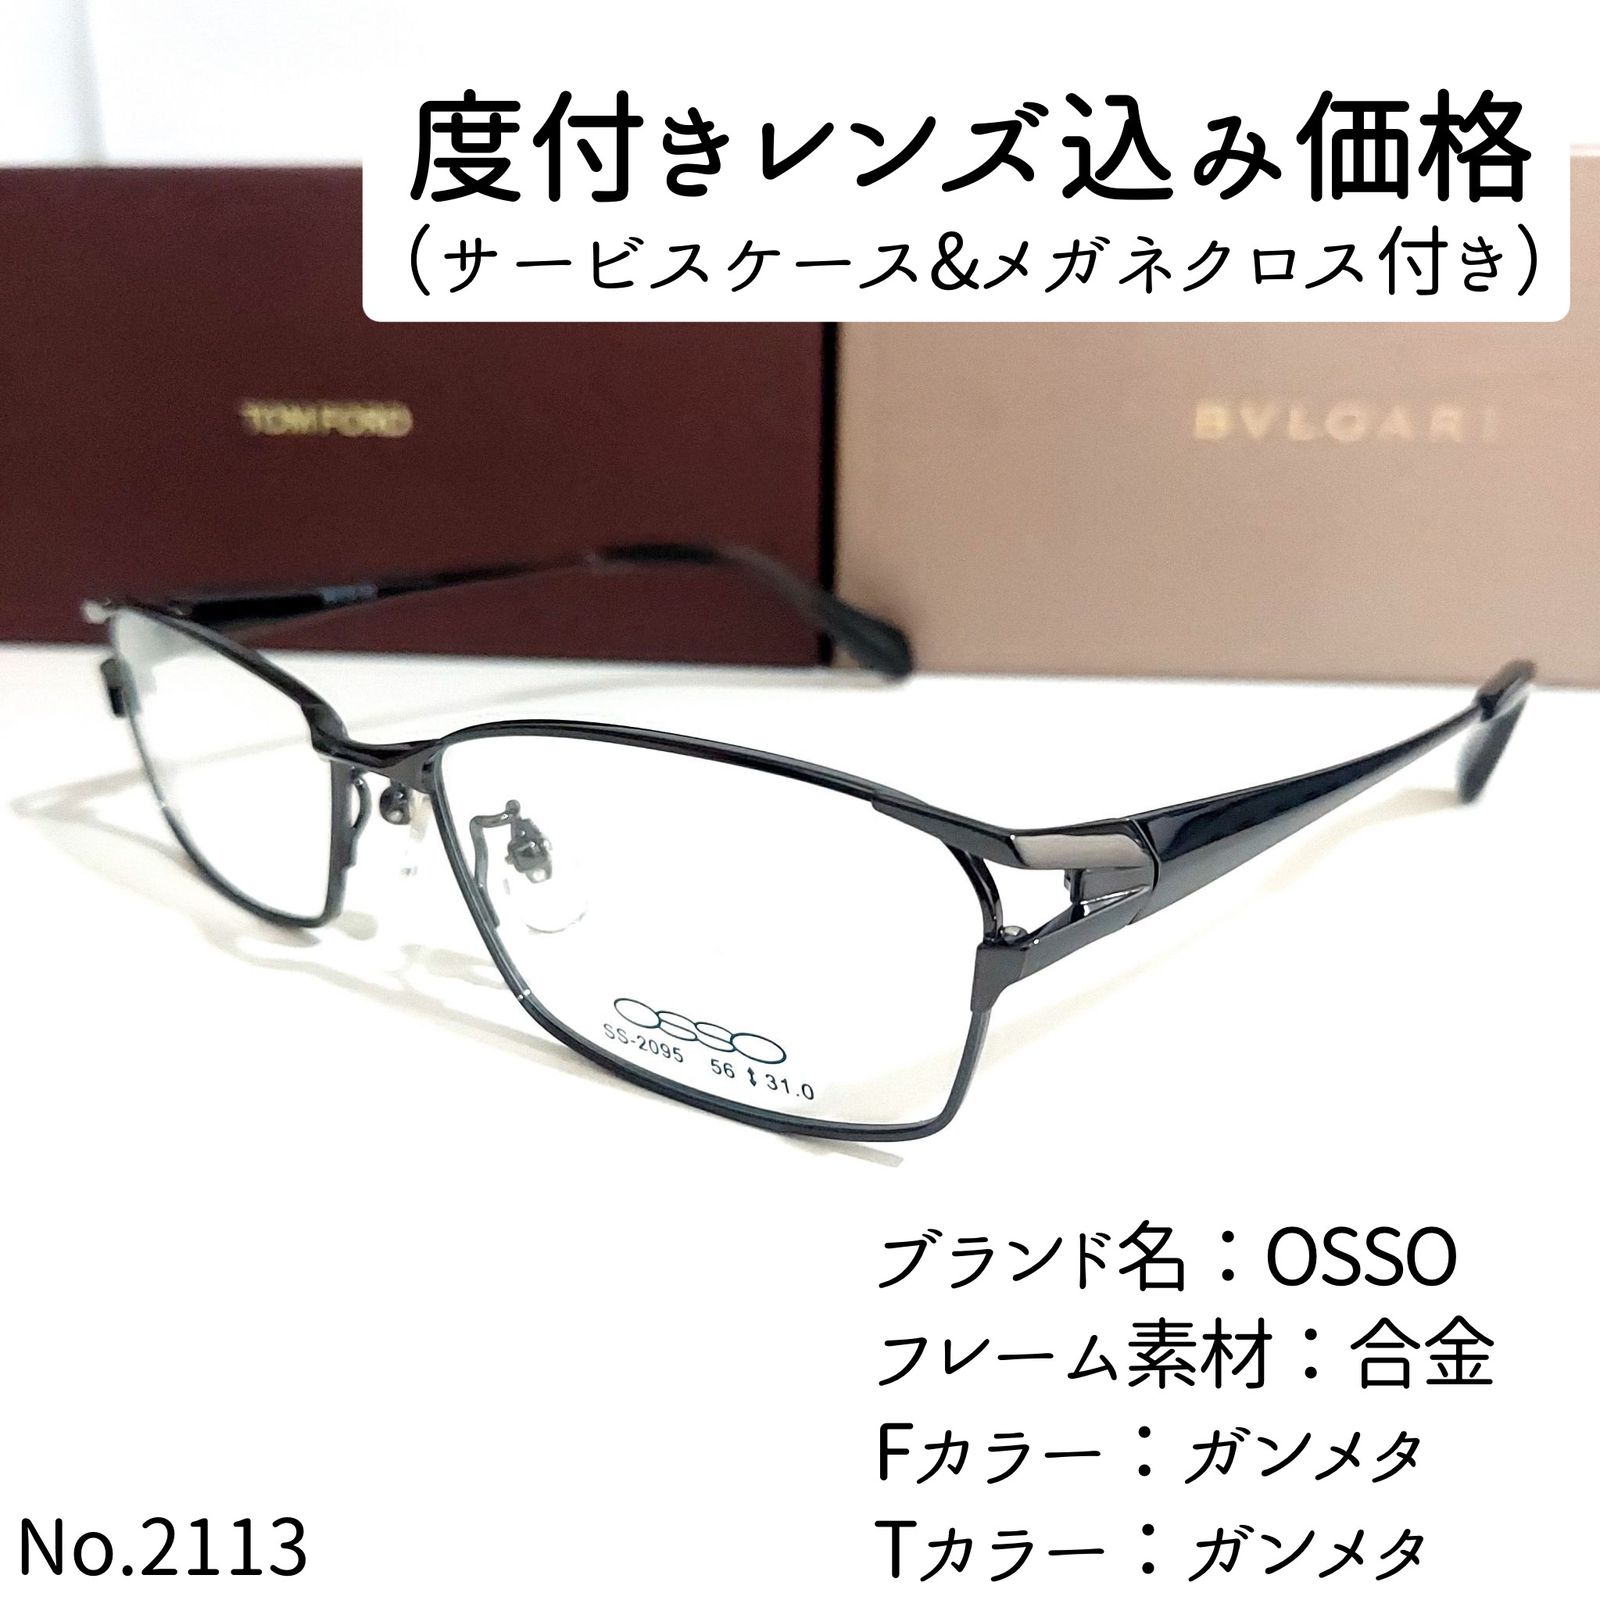 No.2113メガネ OSSO【度数入り込み価格】 - サングラス/メガネ